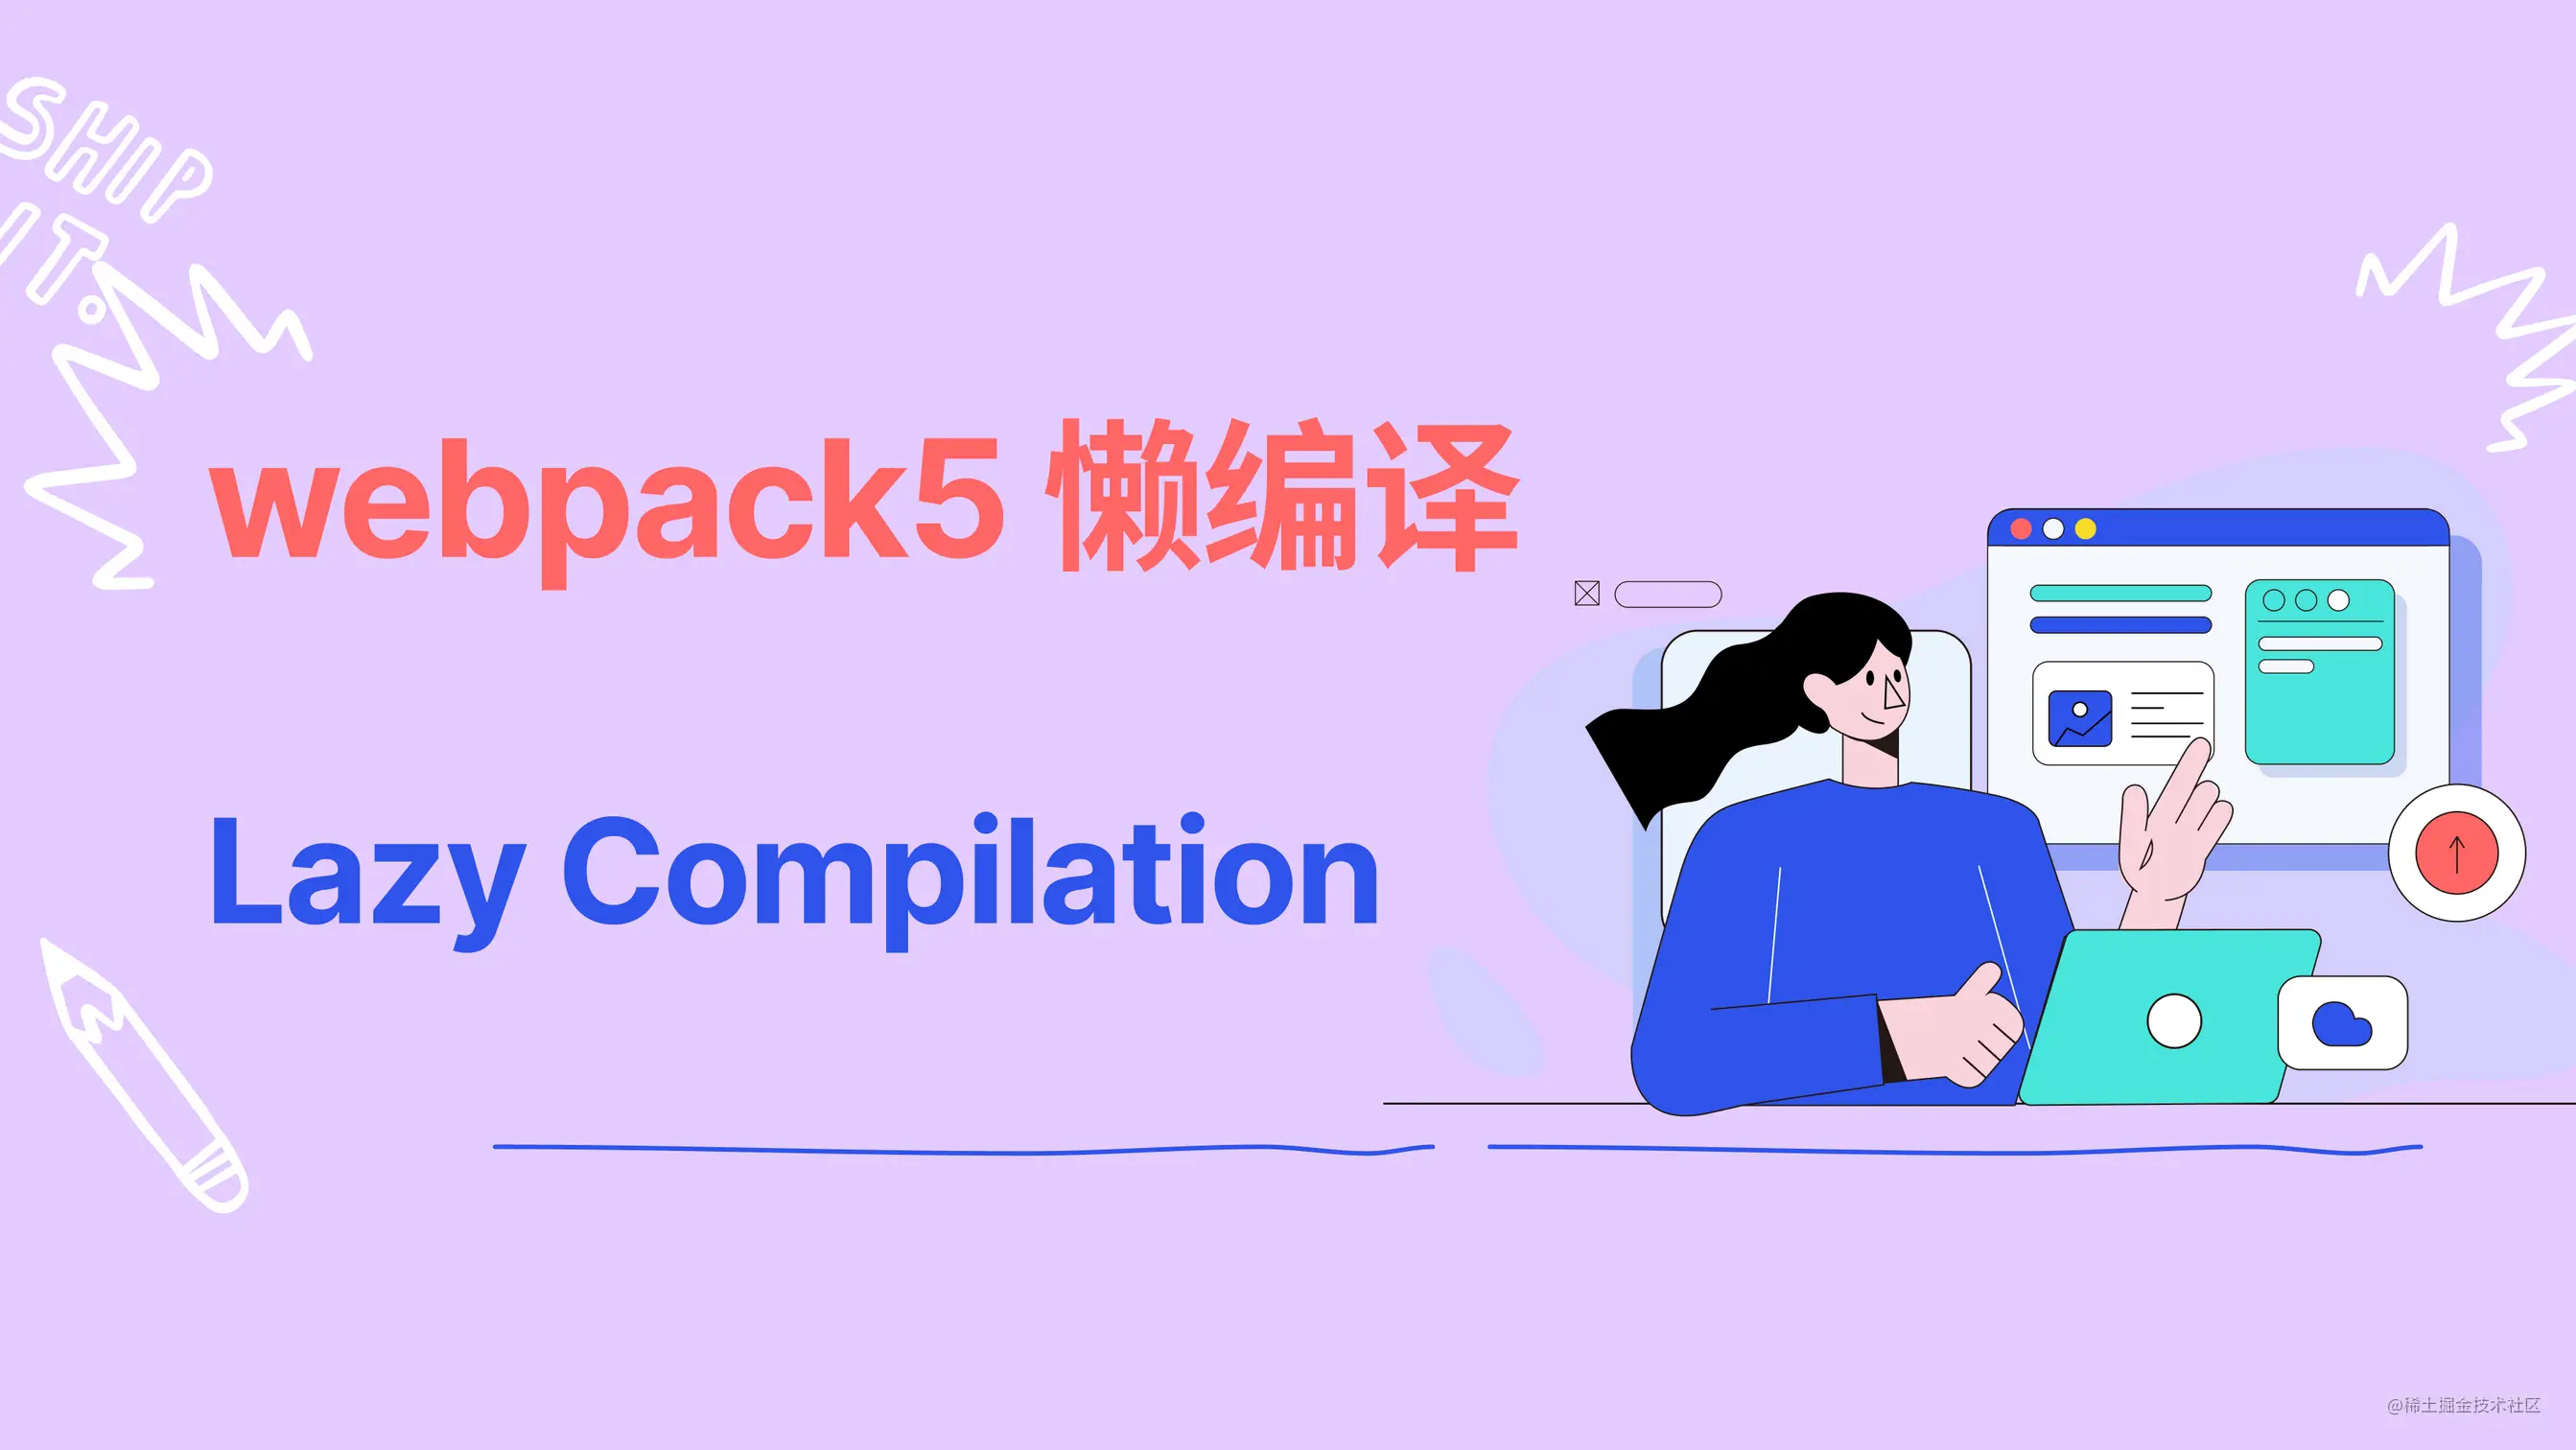 在 Webpack 5 中开启懒编译（Lazy Compilation）